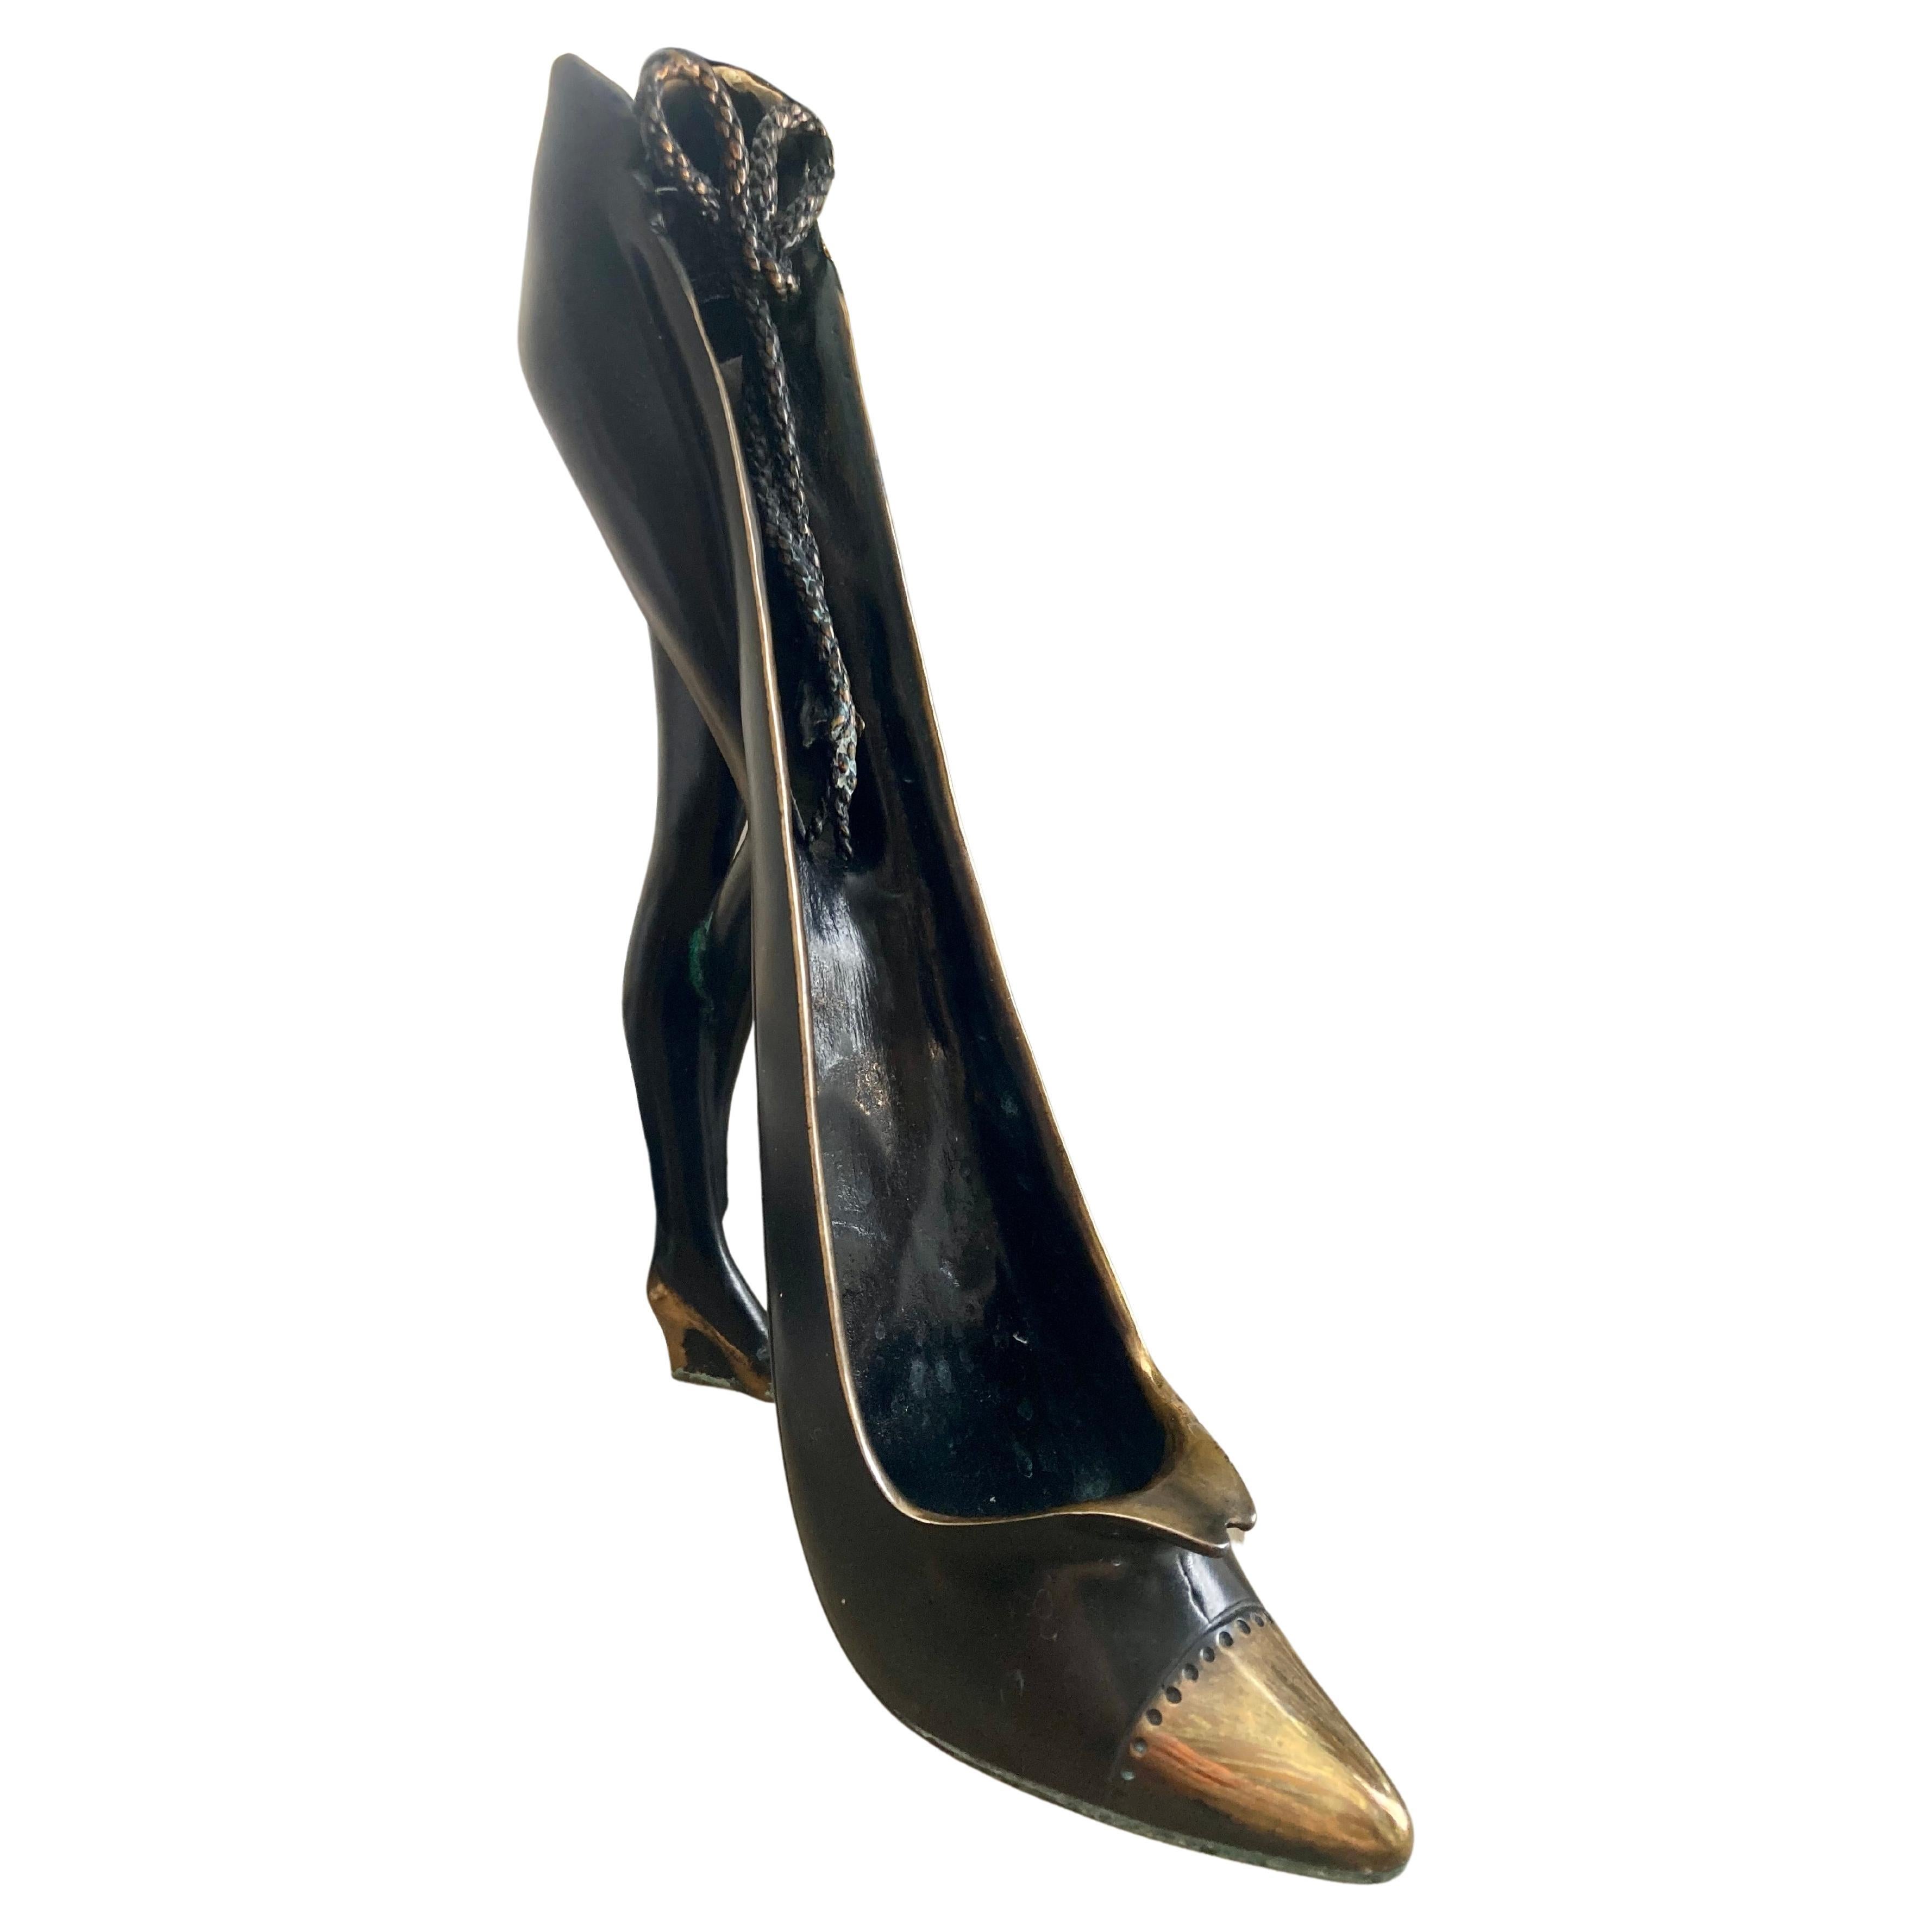 Salvador Dali "Shoe " bronze/metal sculpture , Venturi Arte mark stamped 251/500